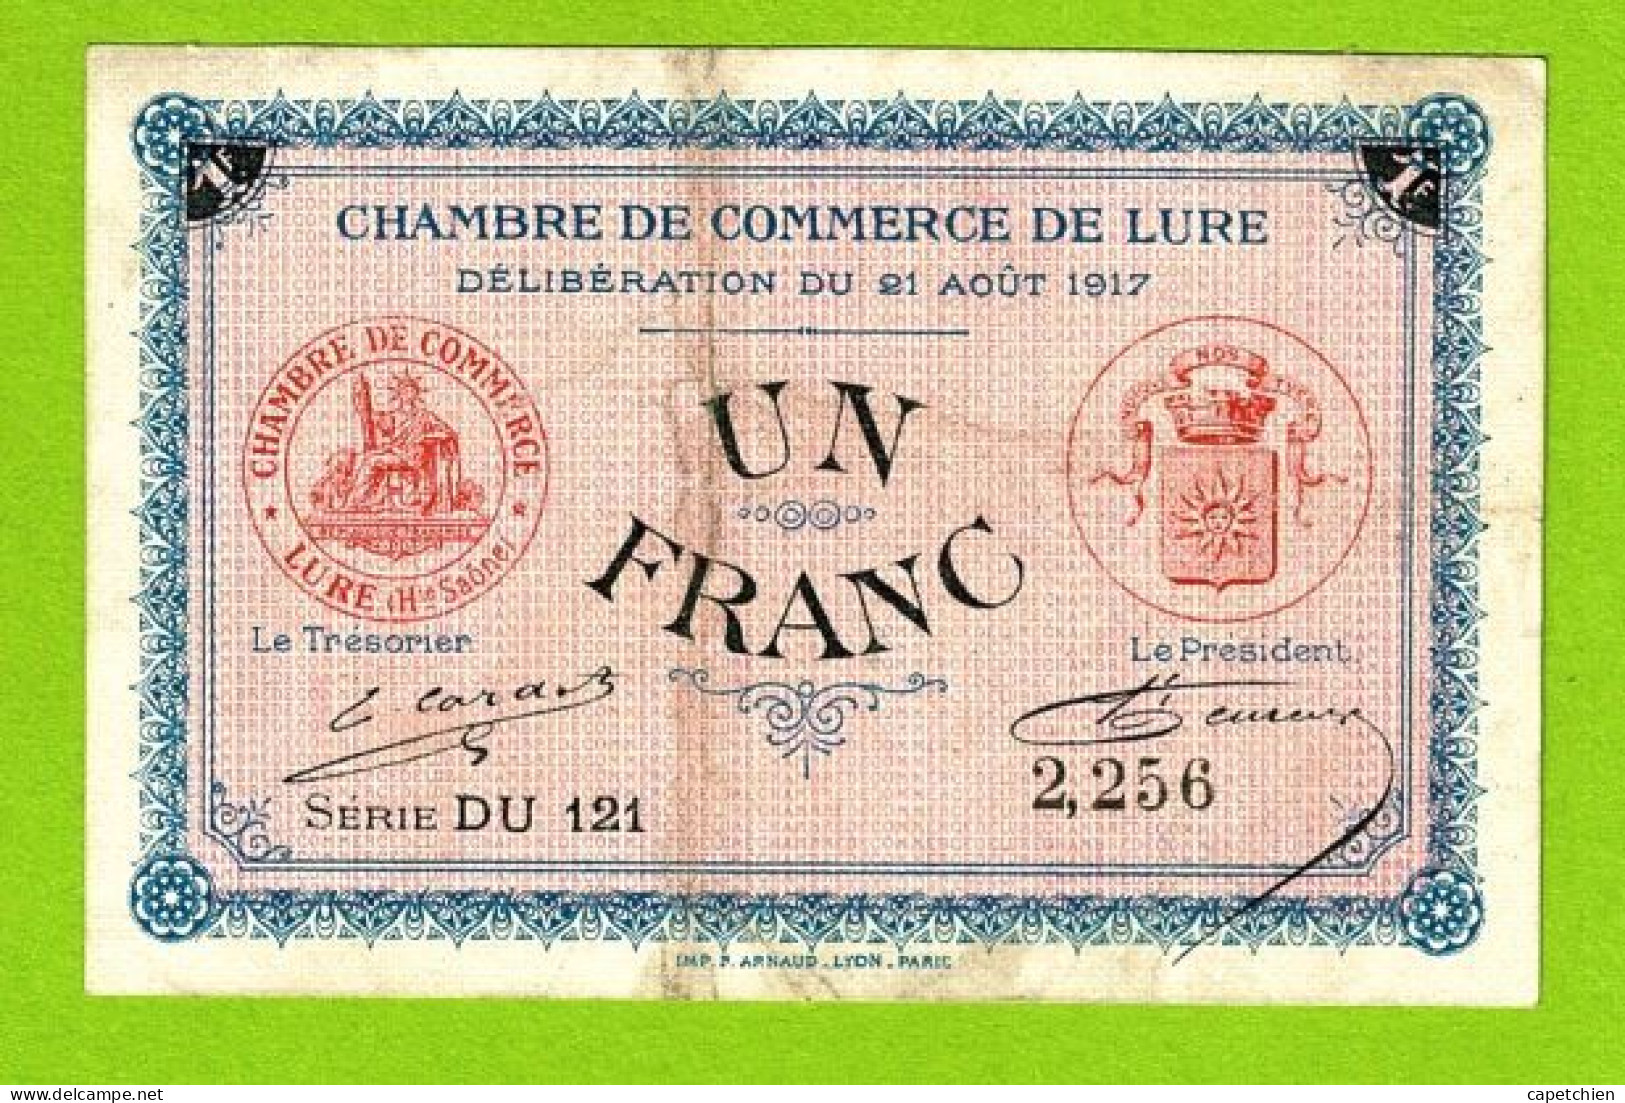 FRANCE / LURE / 1 FRANC / 21 AOUT 1917 / N° 2256 / SERIE DU121 / 6eme EMISSION - Handelskammer